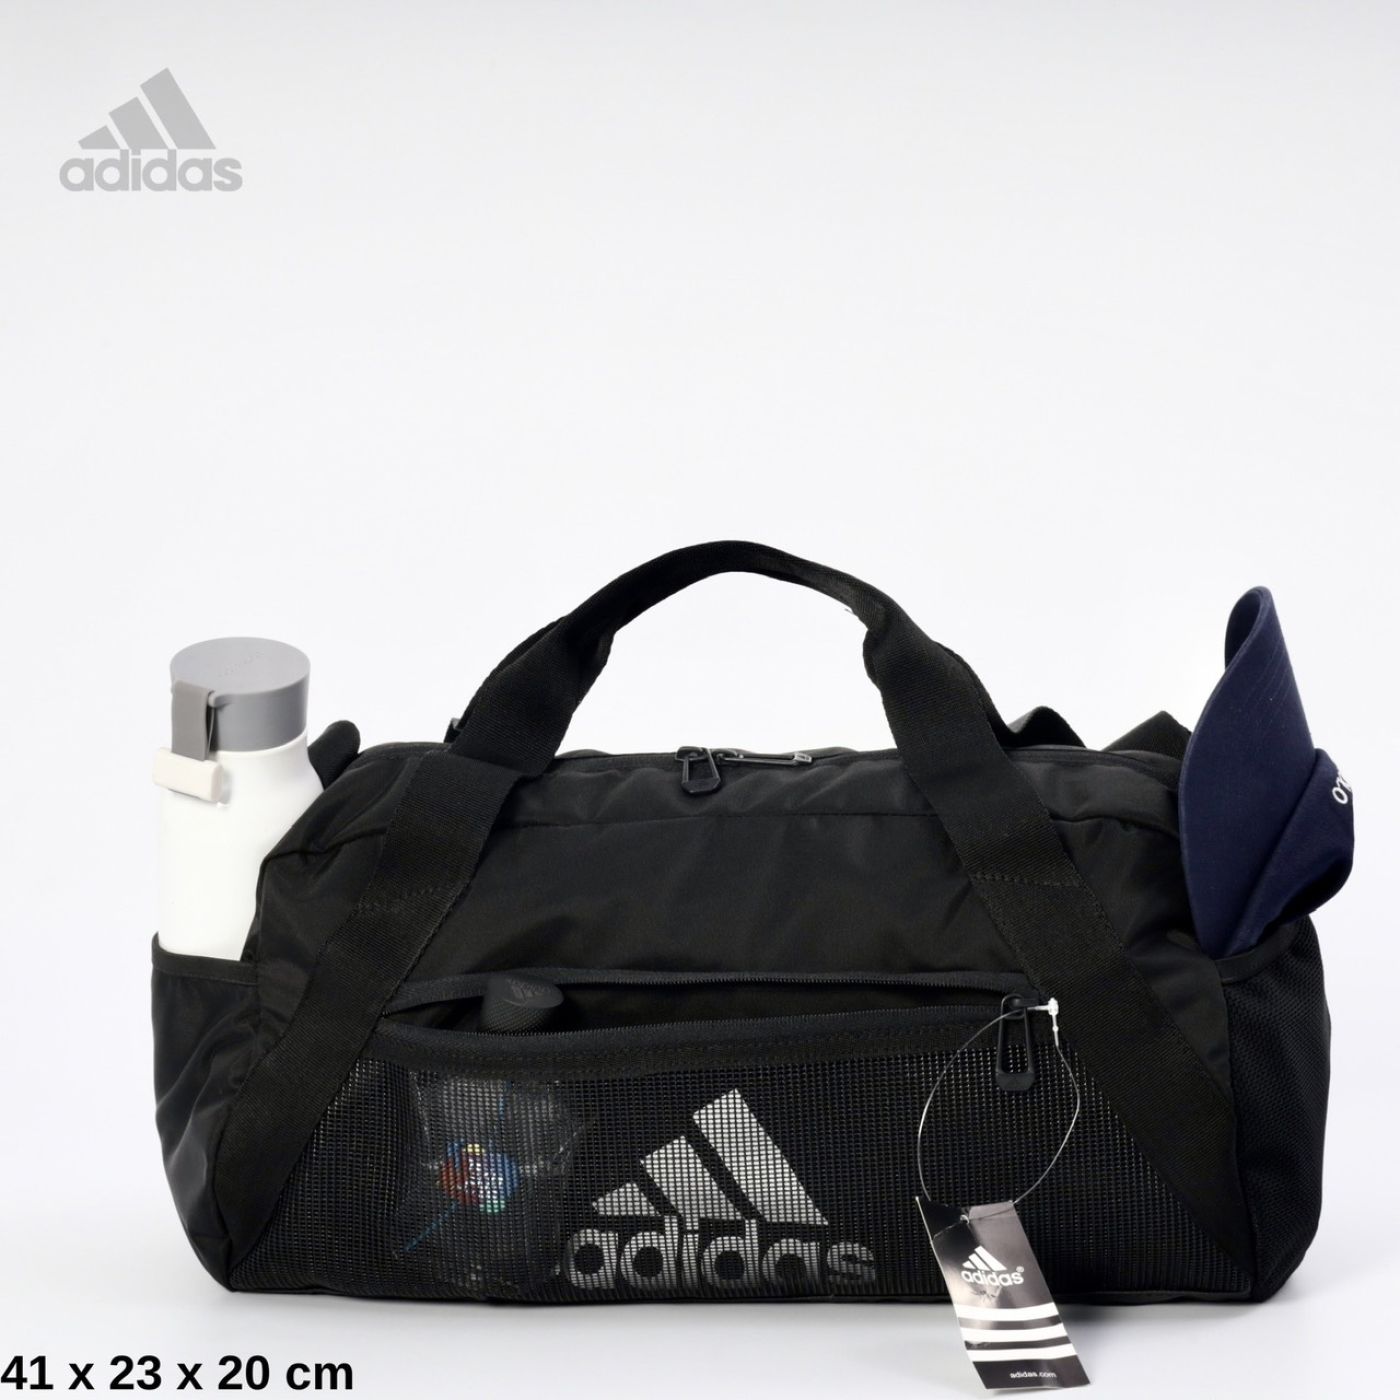 Túi trống Adidas Ripstop Fake cao cấp - Nhiều ngăn, Tiện lợi